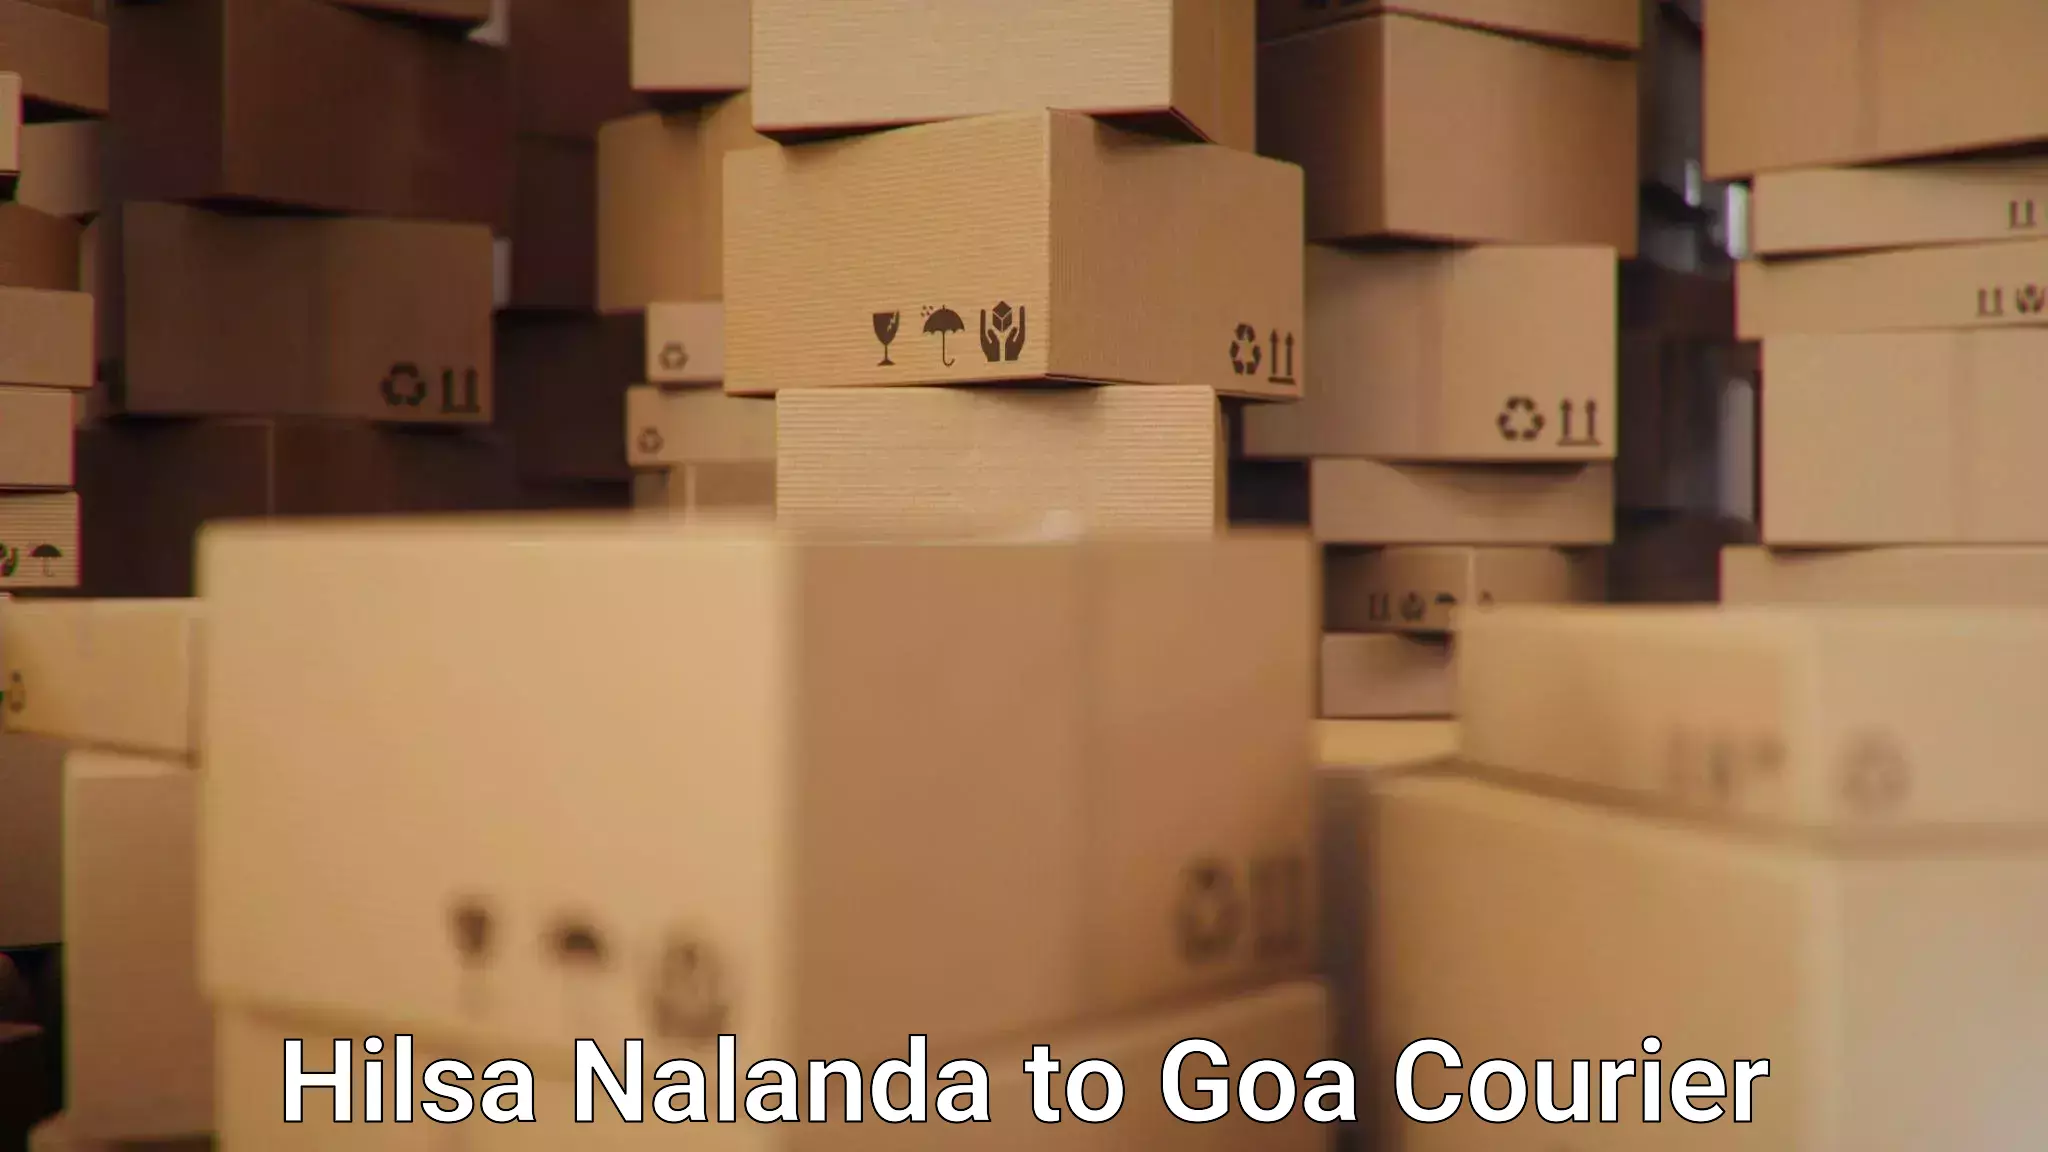 Customer-centric shipping Hilsa Nalanda to IIT Goa